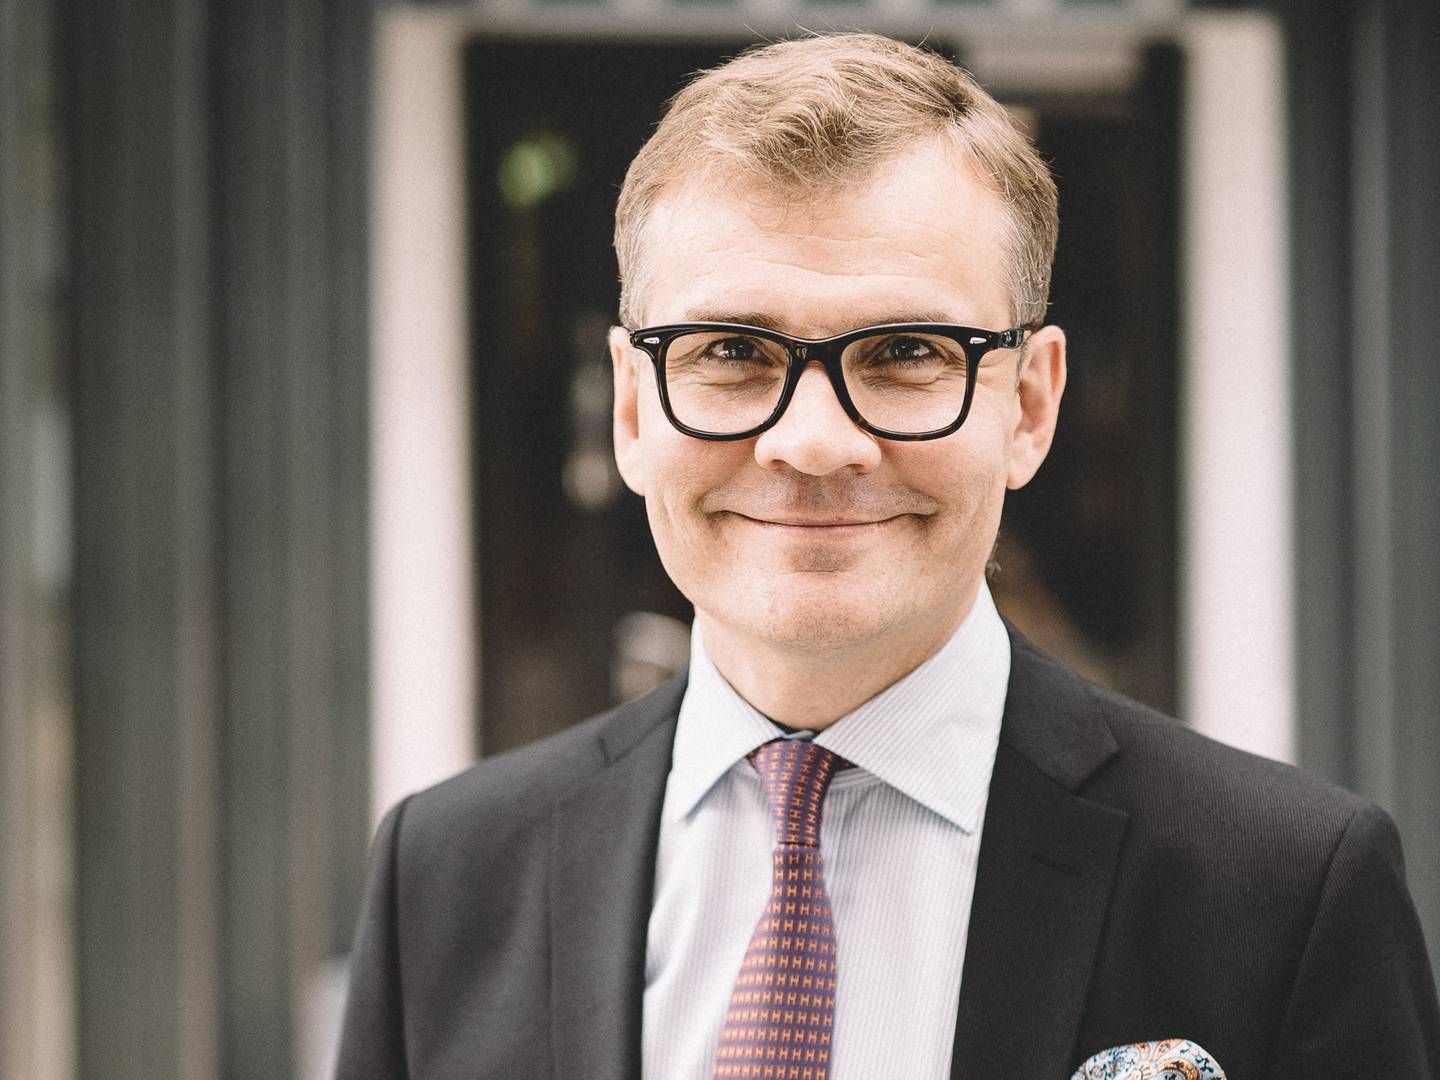 CEO Maunu Lehtimäki | Photo: PR / Evli